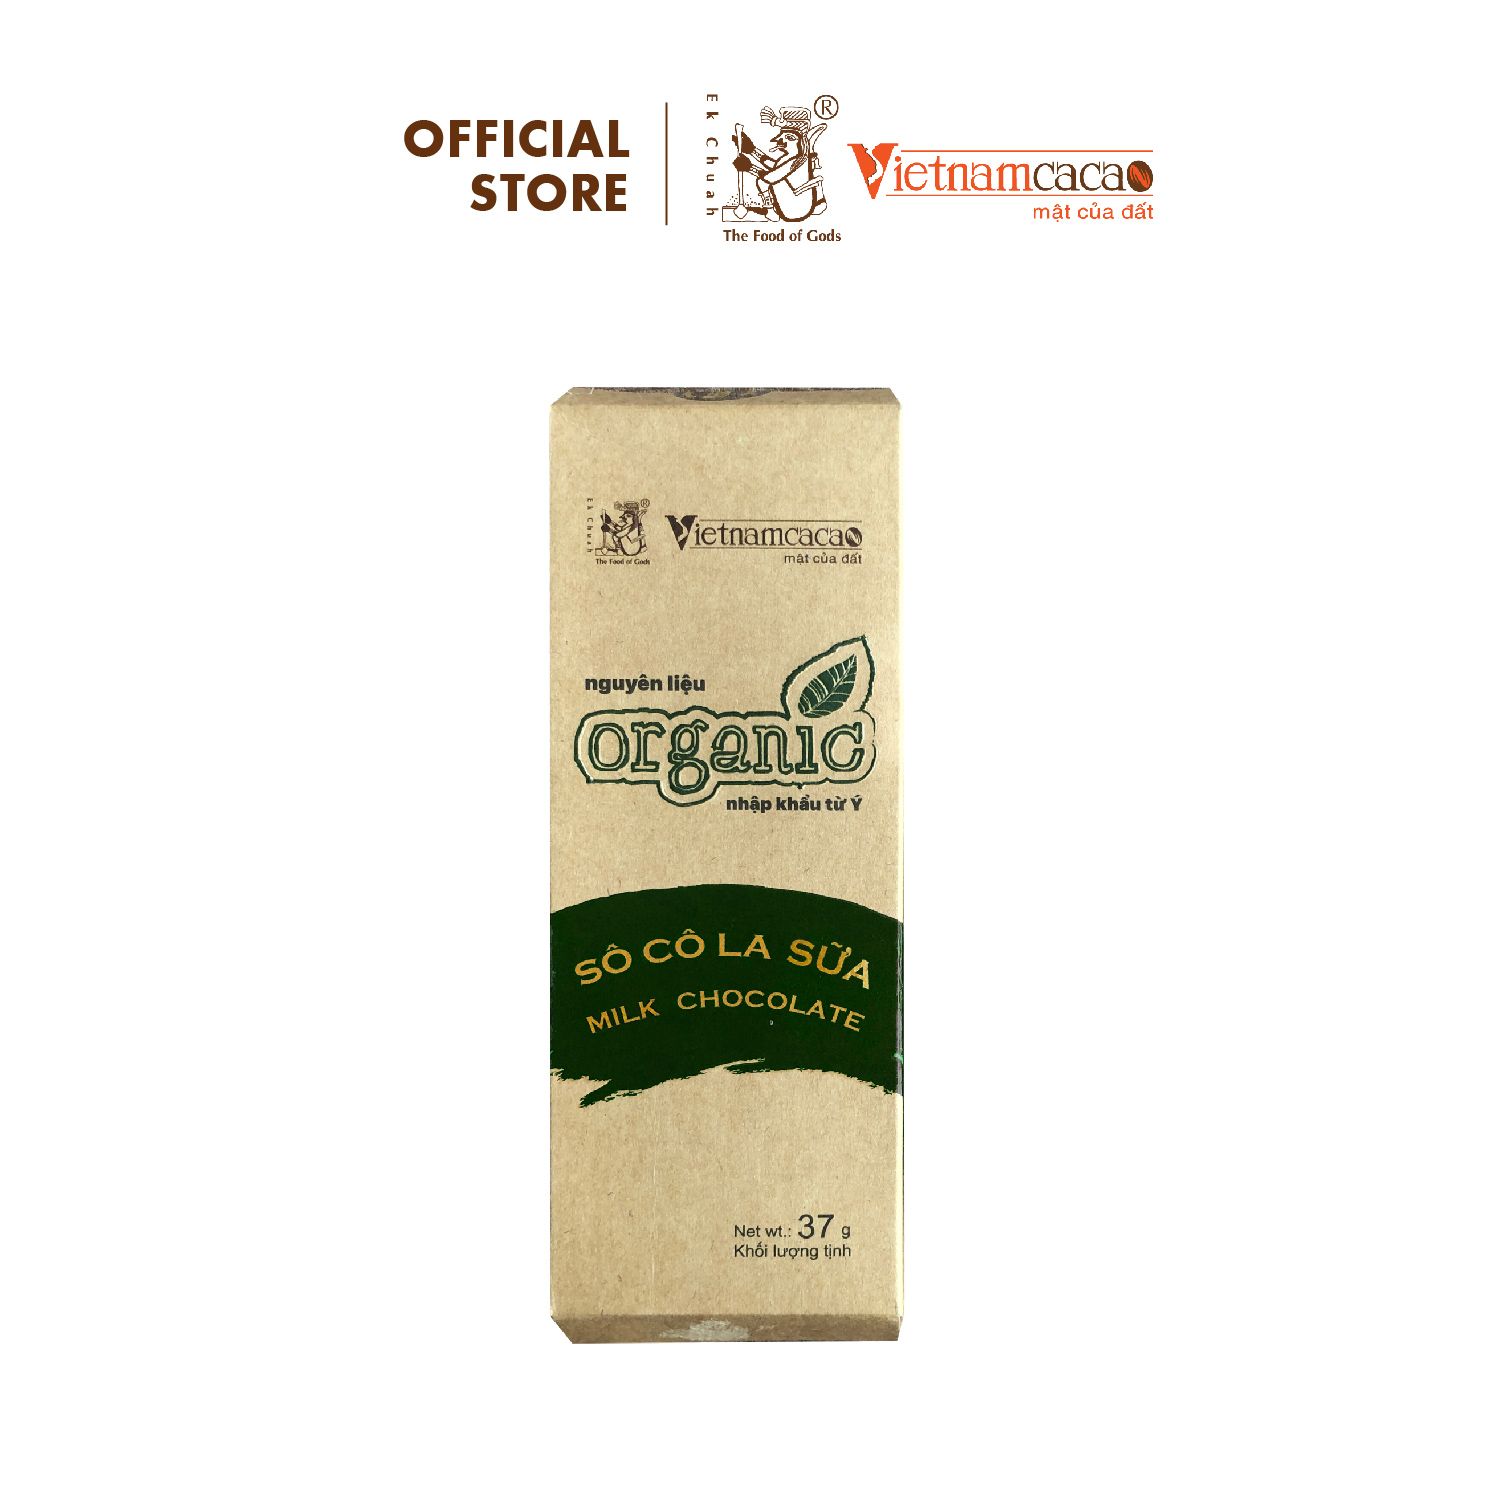  Sôcôla Sữa Thanh 37g VinaCacao Organic 